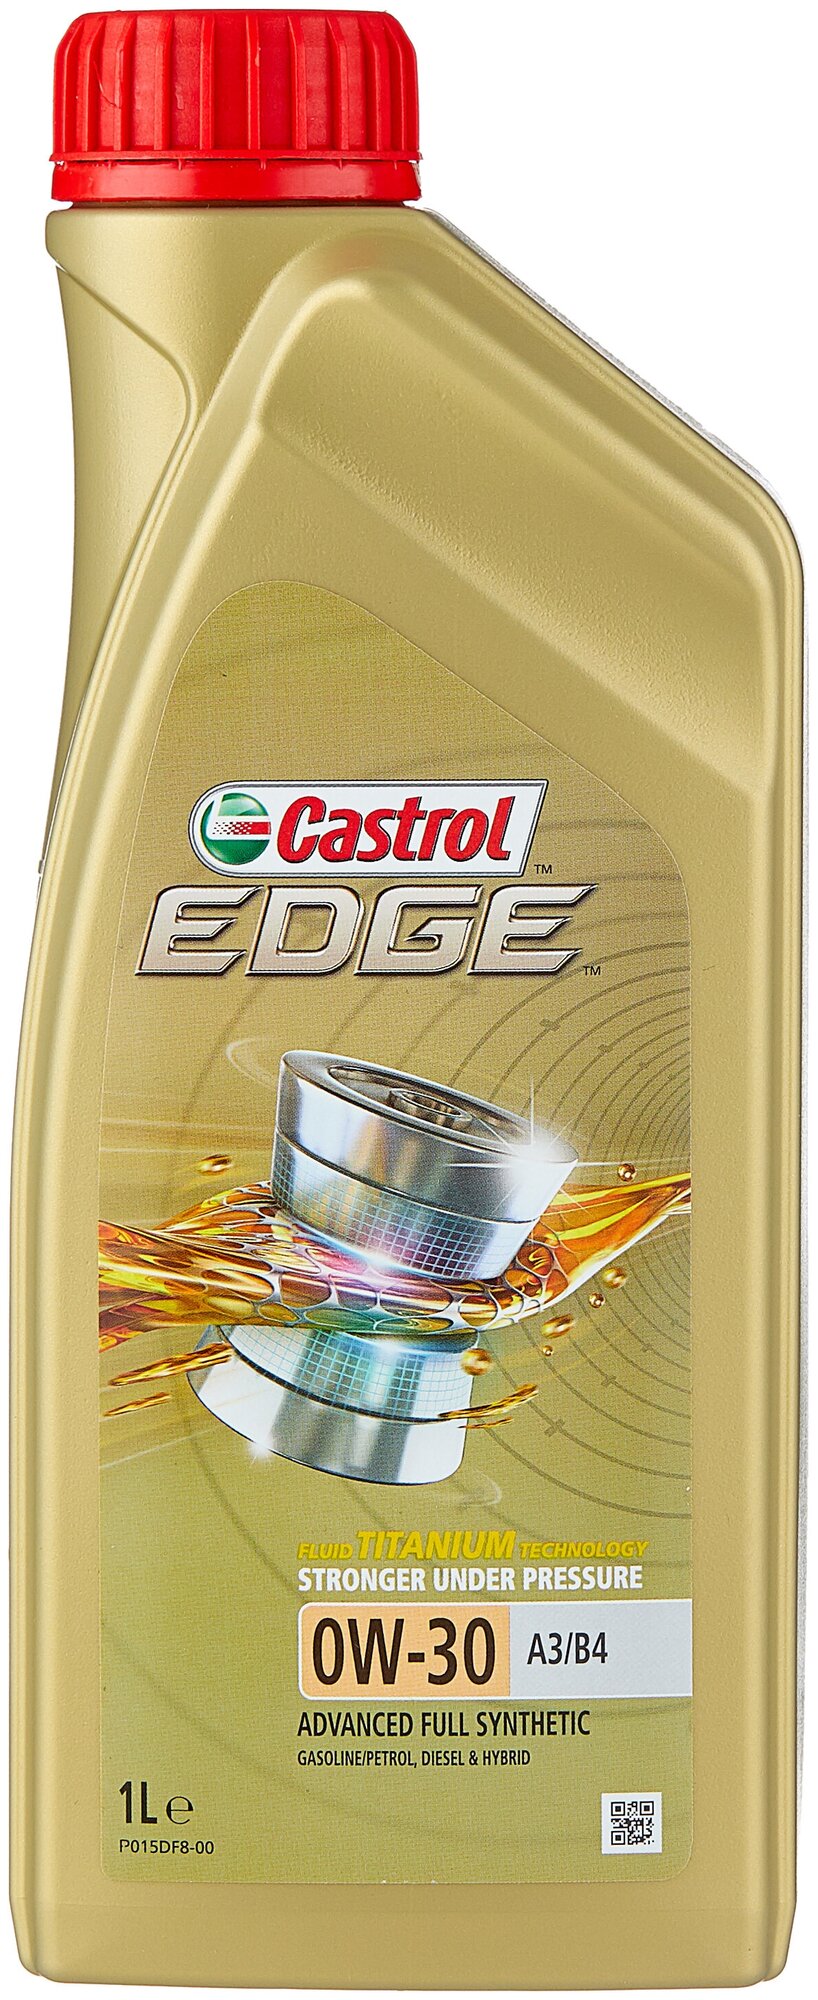 Синтетическое моторное масло Castrol Edge 0W-30 A3/B4, 1 л, 1 кг